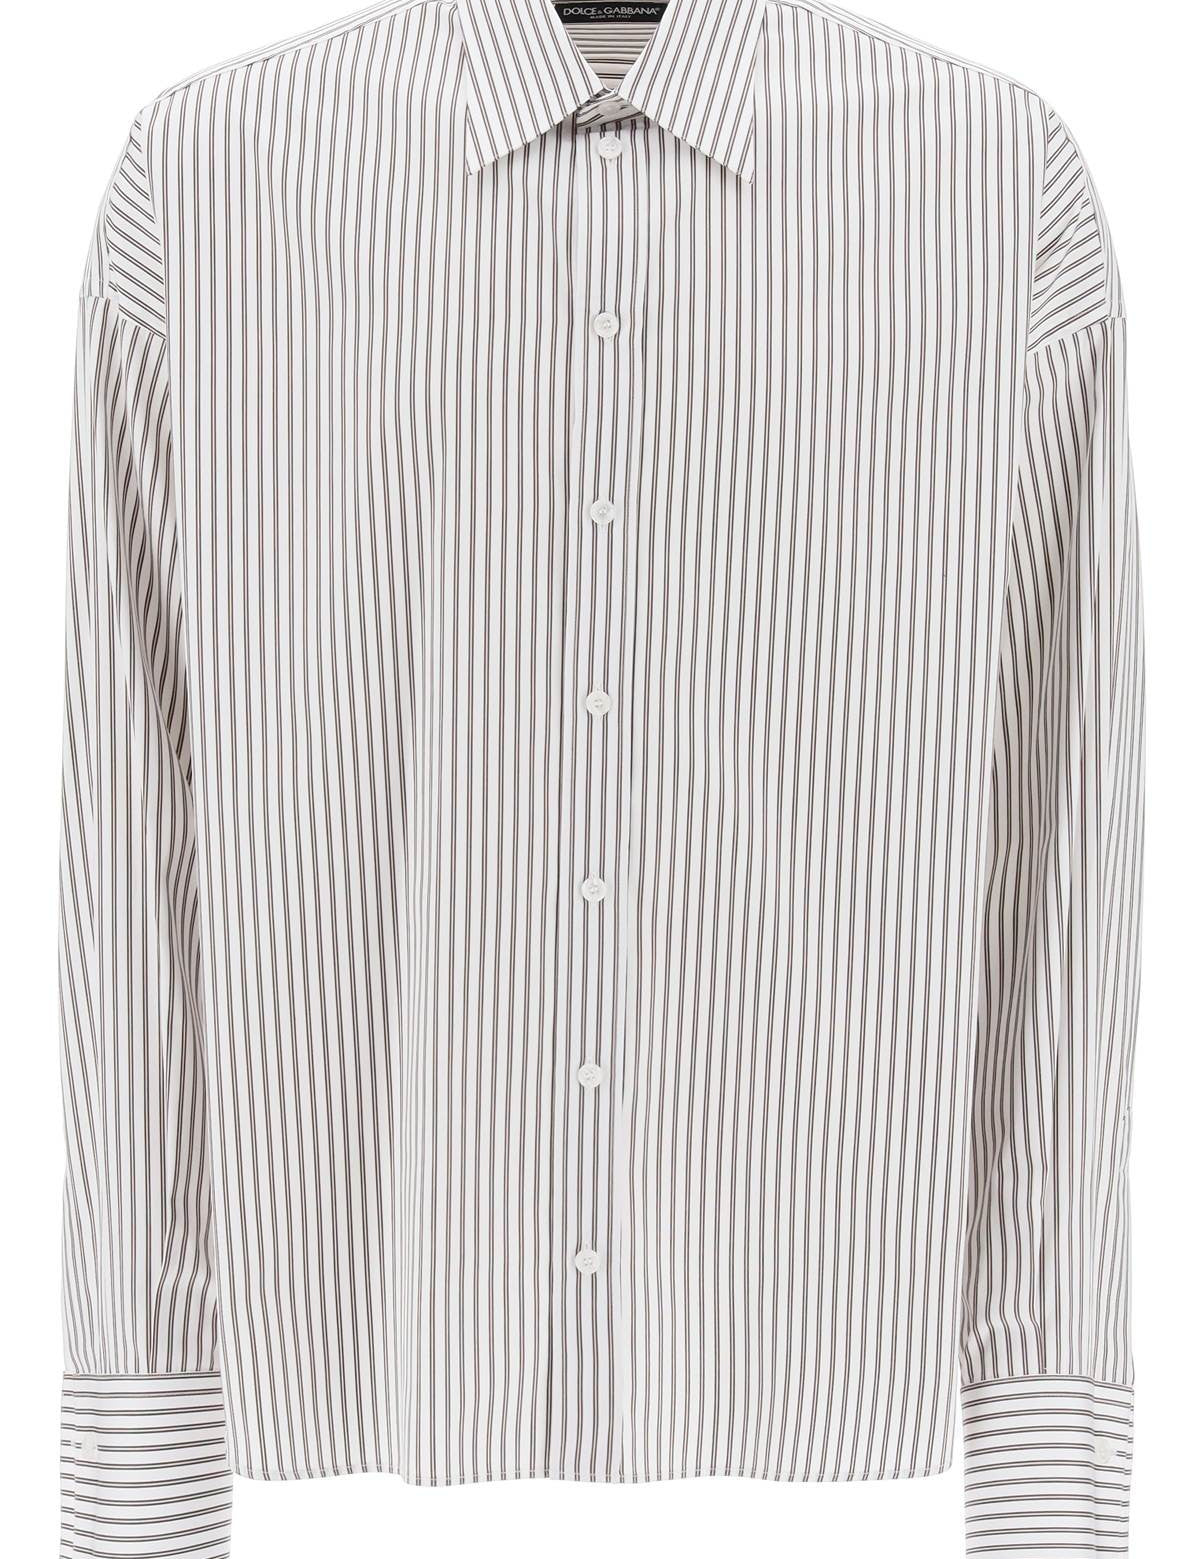 dolce-gabbana-oversized-striped-poplin-shirt.jpg